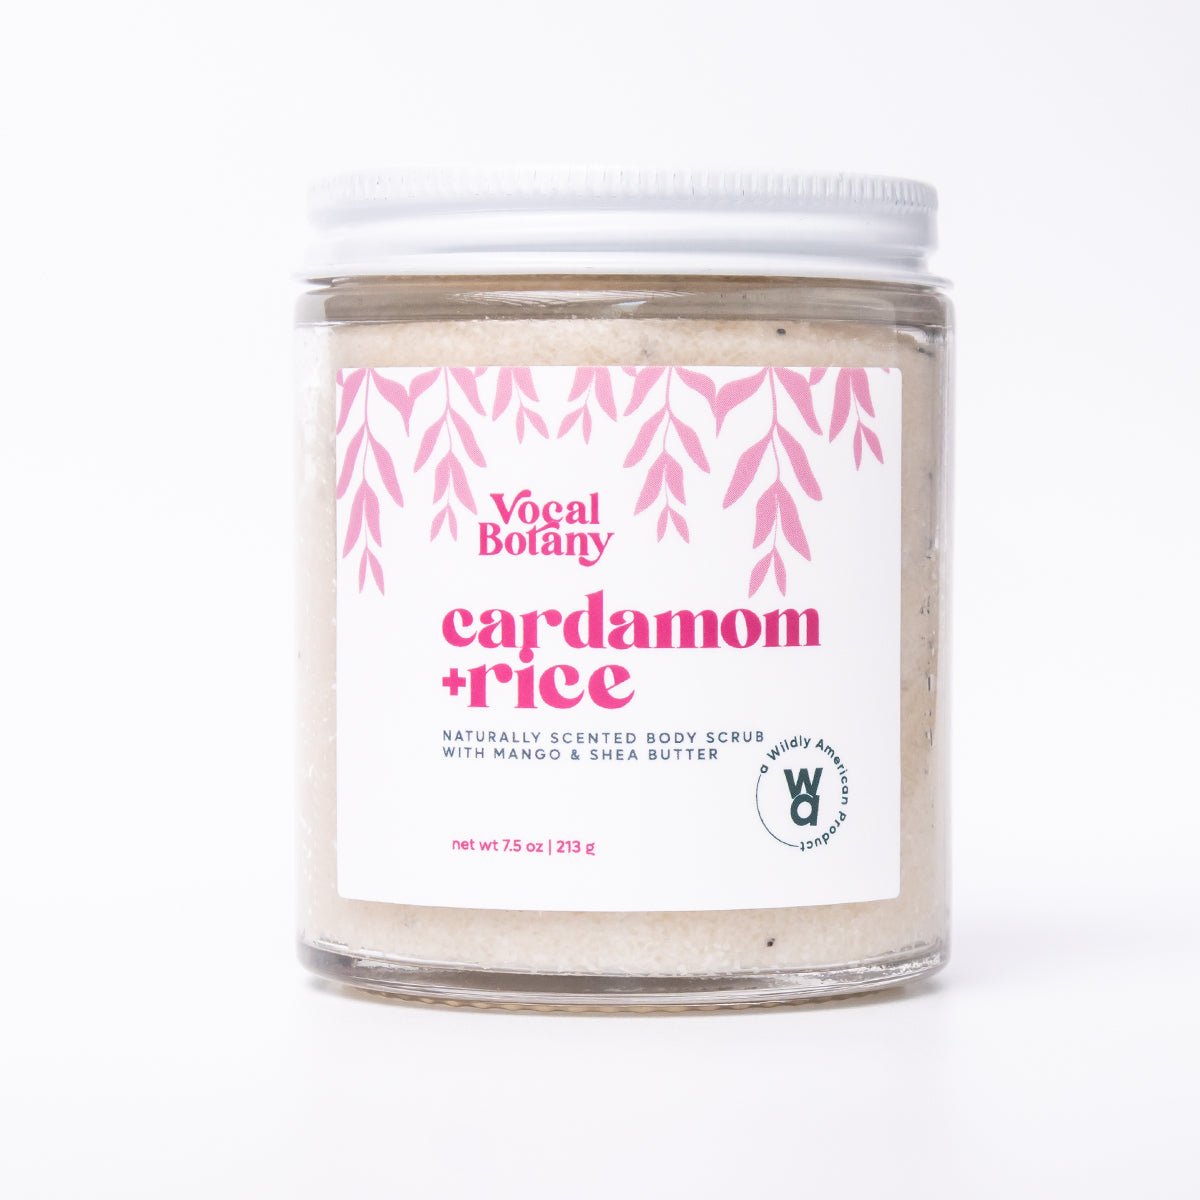 Cardamom & Rice Body Scrub - Vocal Botany